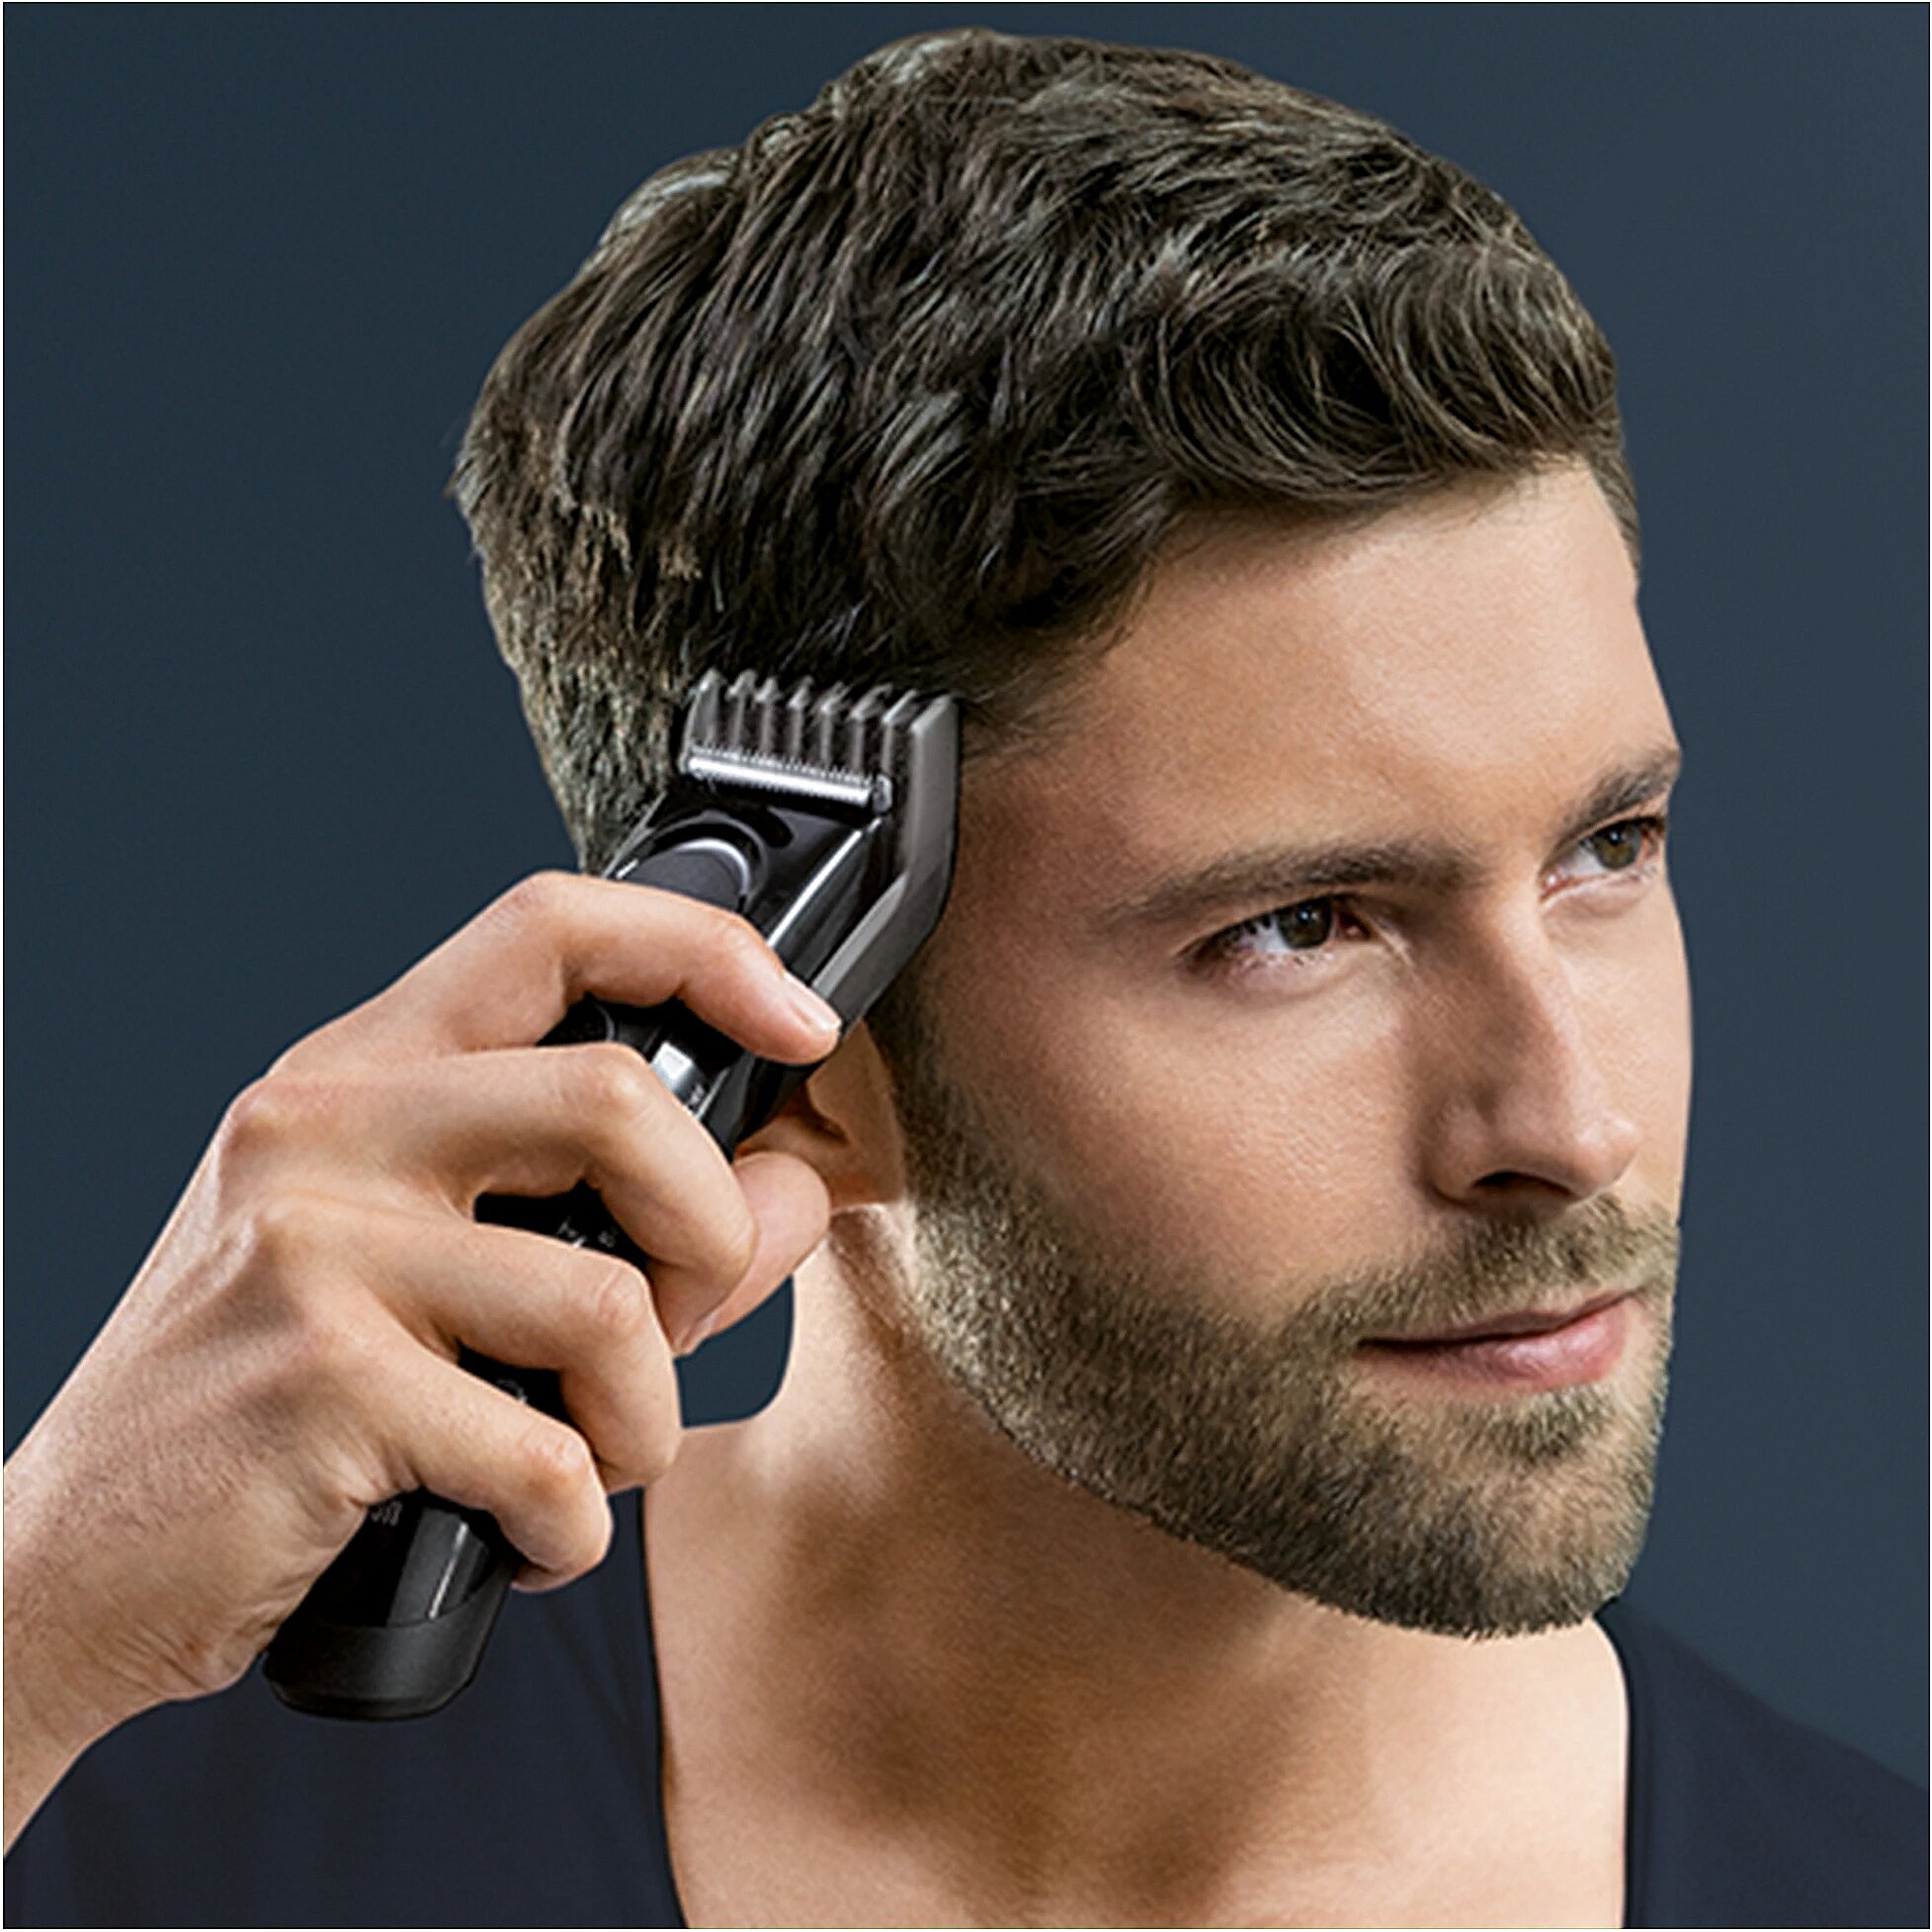 Прибор для стрижки волос. Машинка для стрижки волос Braun hc5050. Braun hair Clipper hc5050. Braun HC 5050. Триммер Braun HC 5050.